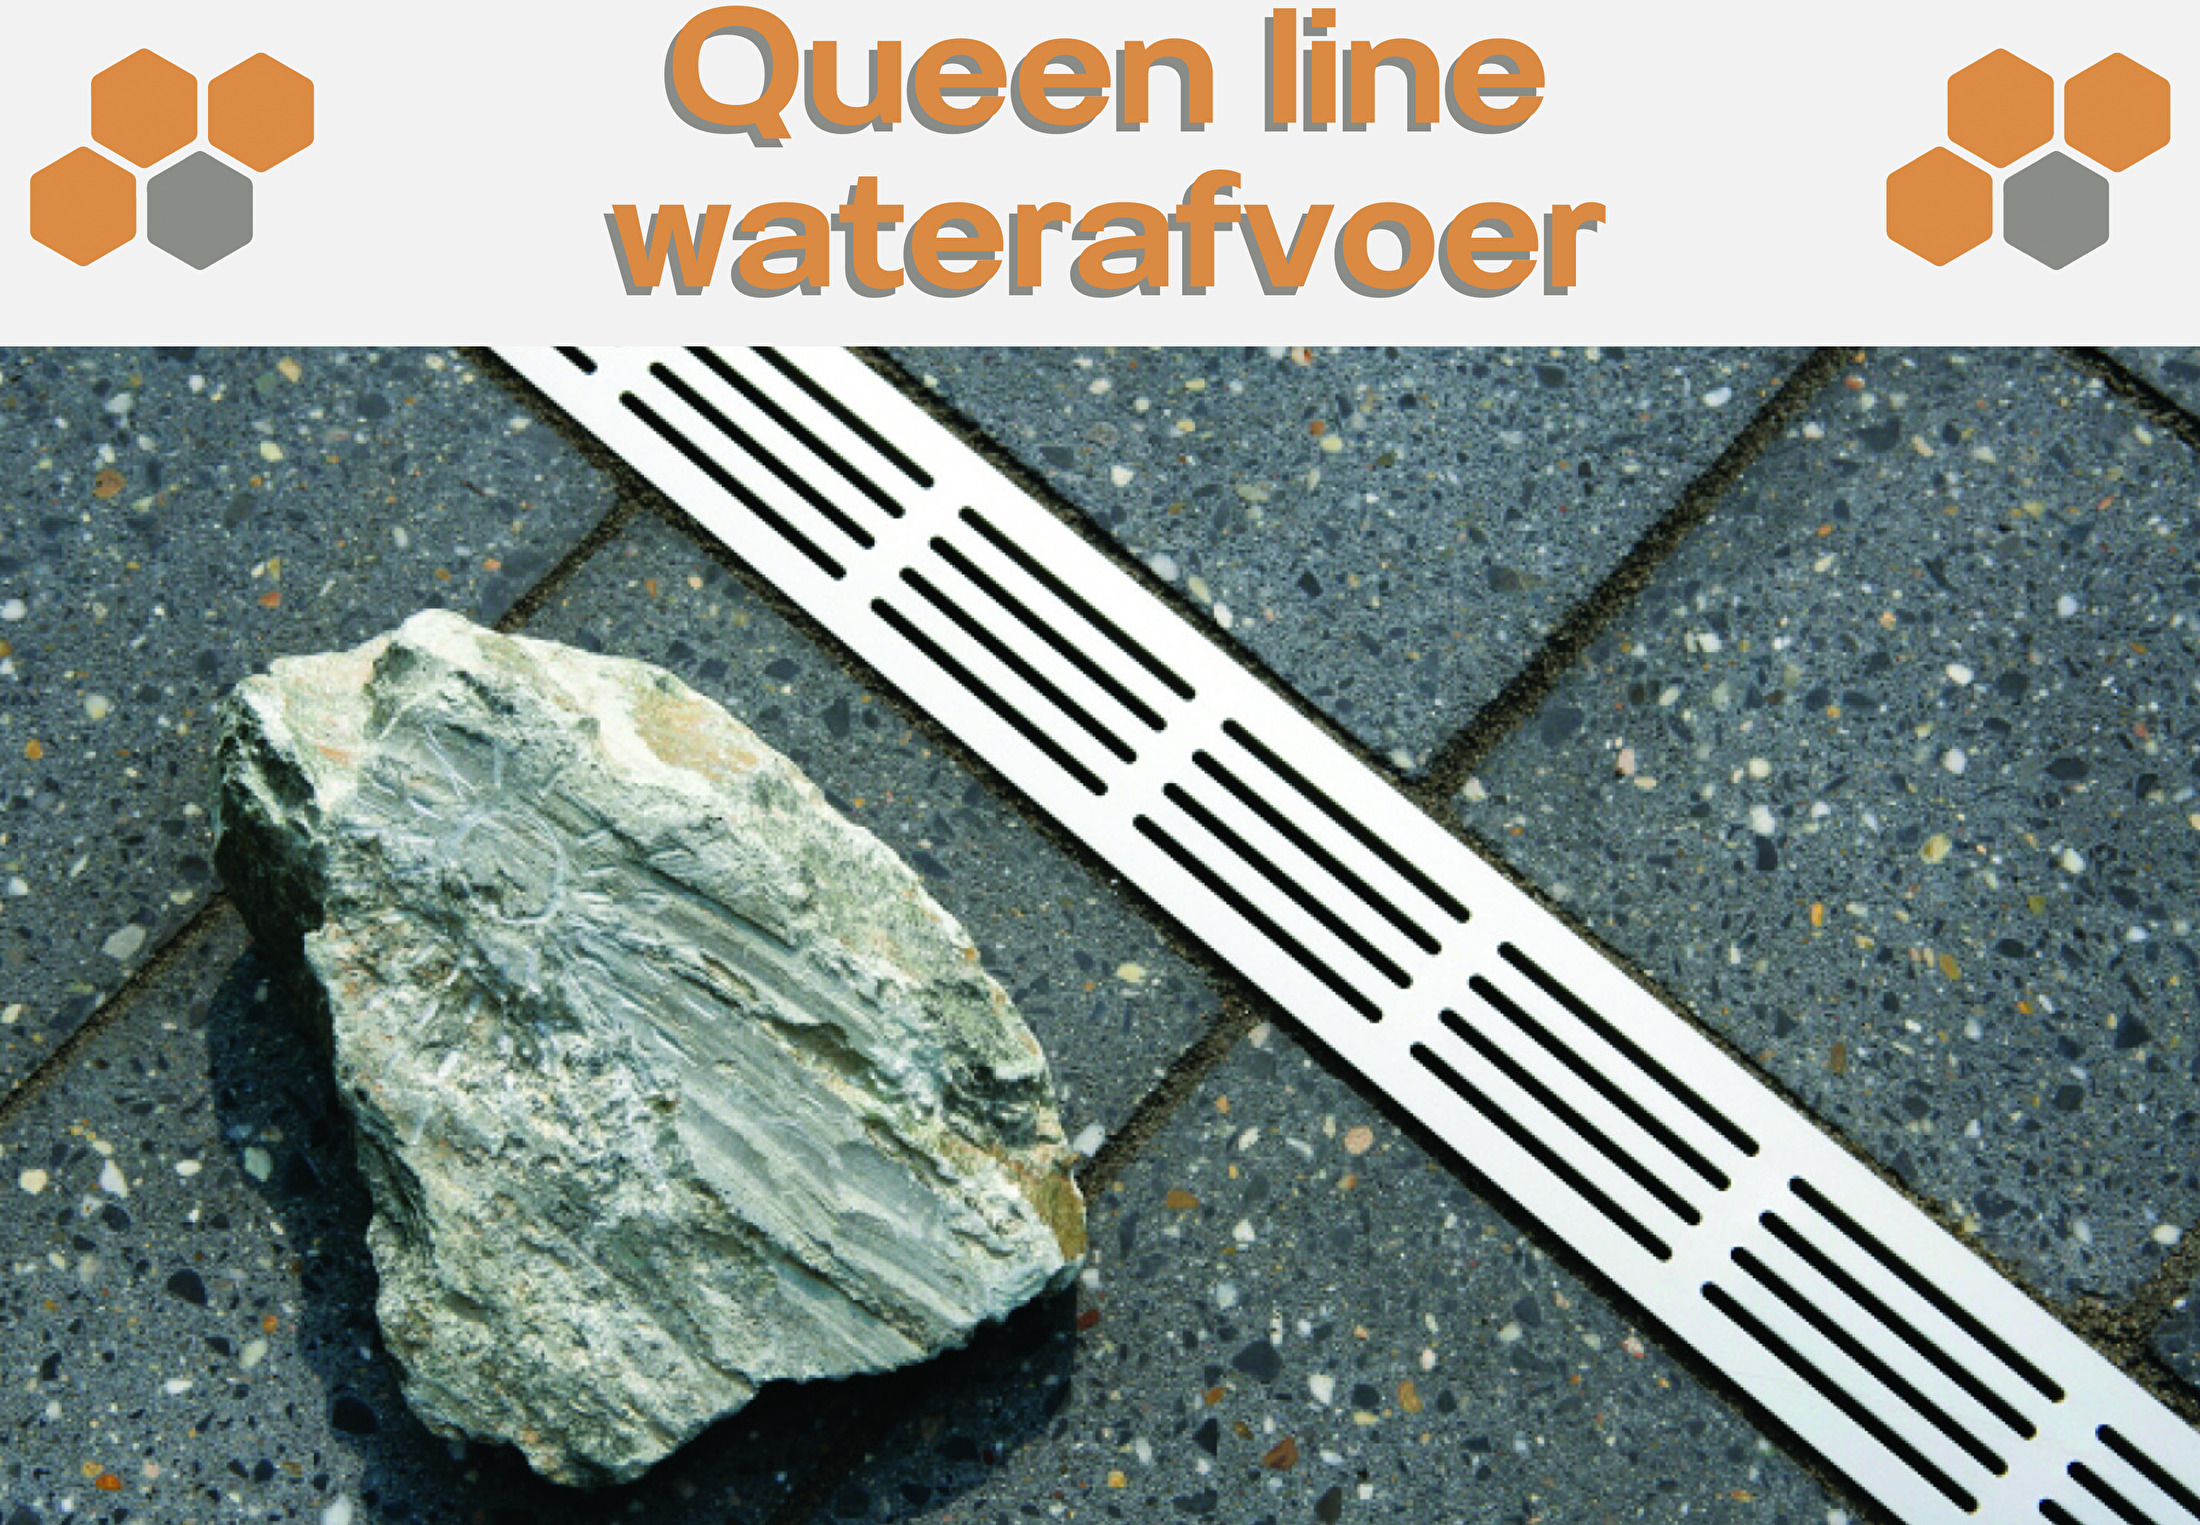 Queen line waterafvoer